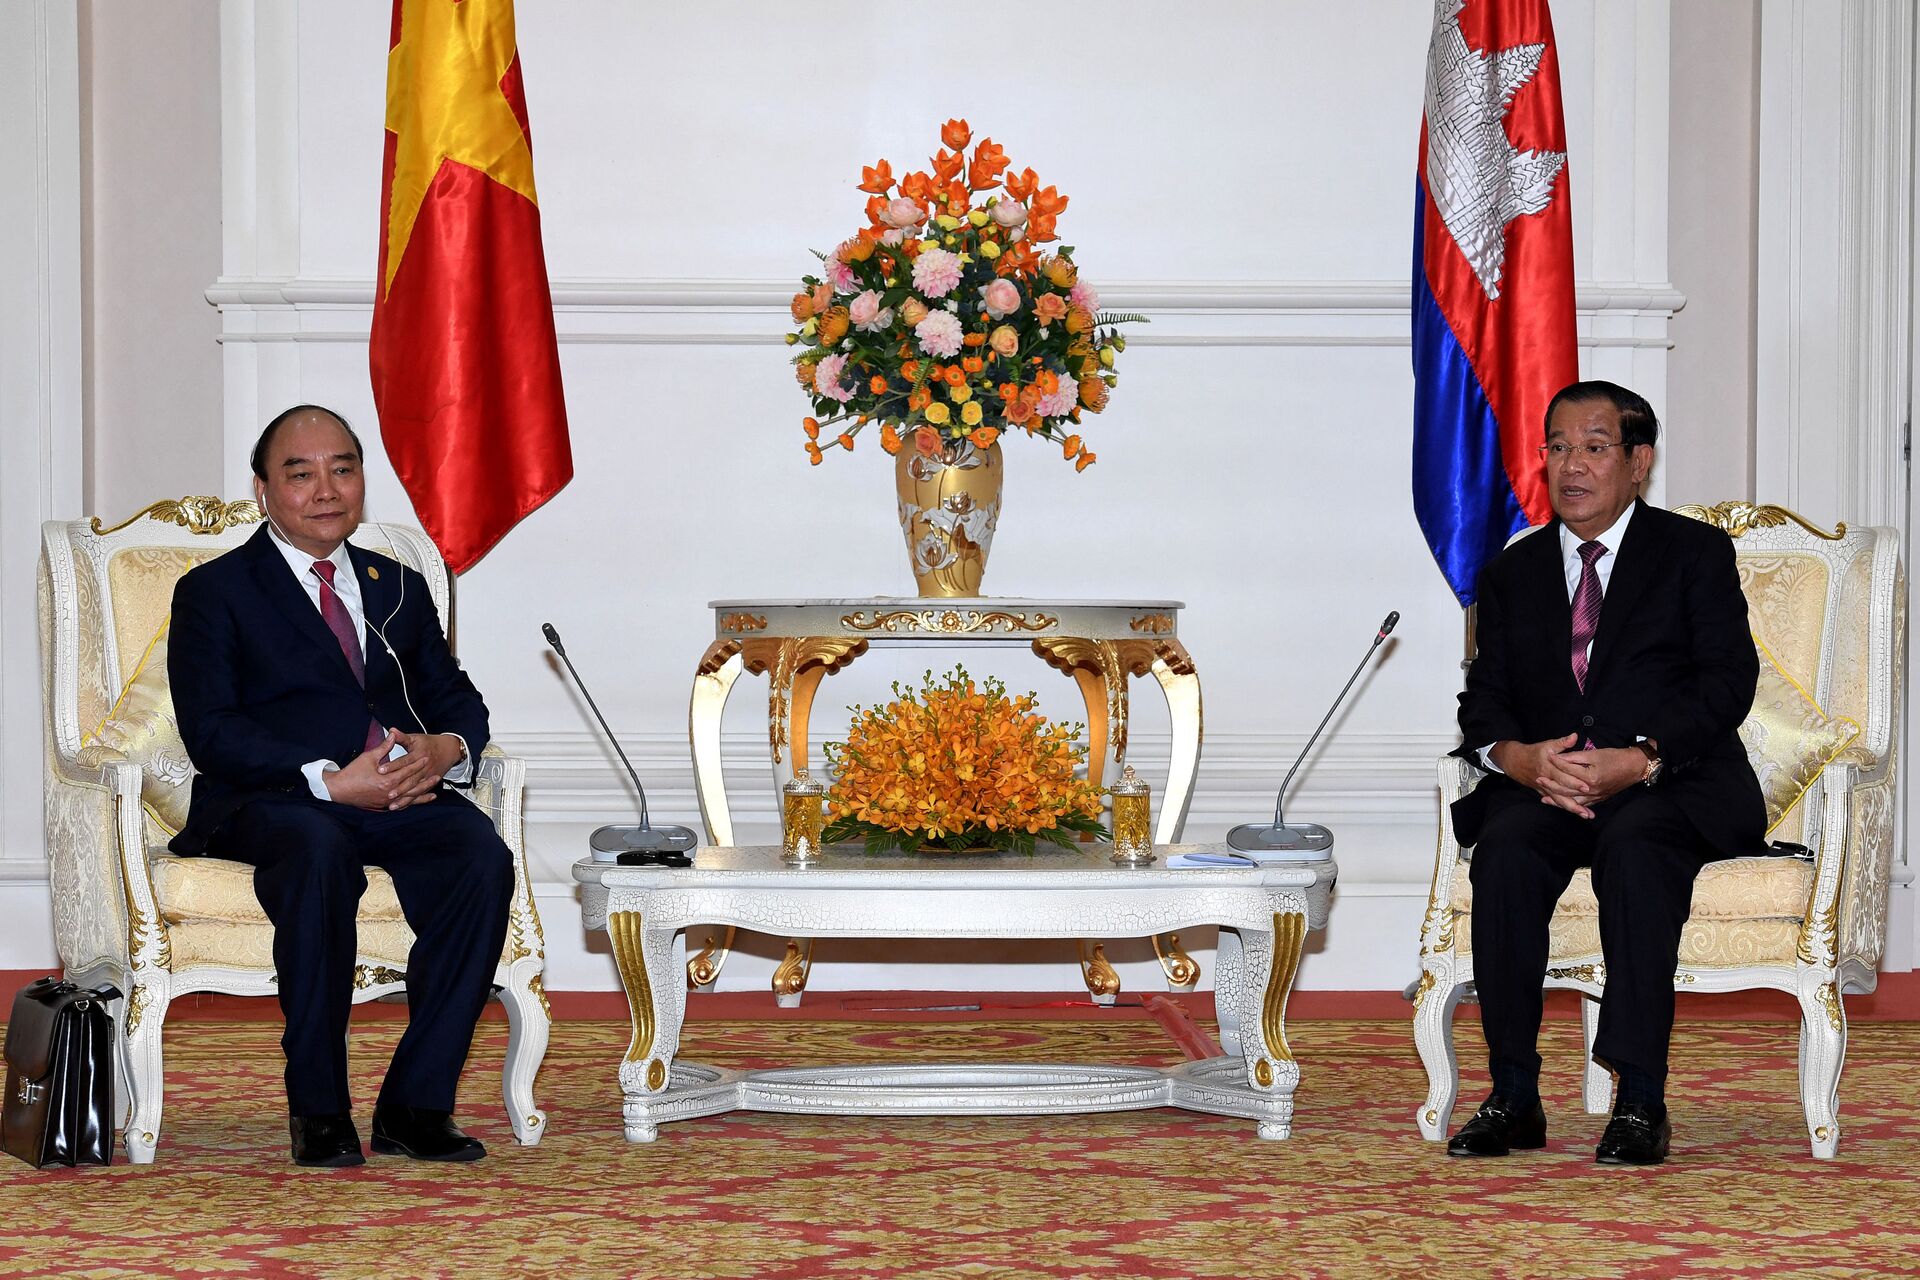 Thủ tướng Chính phủ Nguyễn Xuân Phúc và Thủ tướng Vương quốc Campuchia Samdech Techo Hun Sen - Sputnik Việt Nam, 1920, 24.12.2021